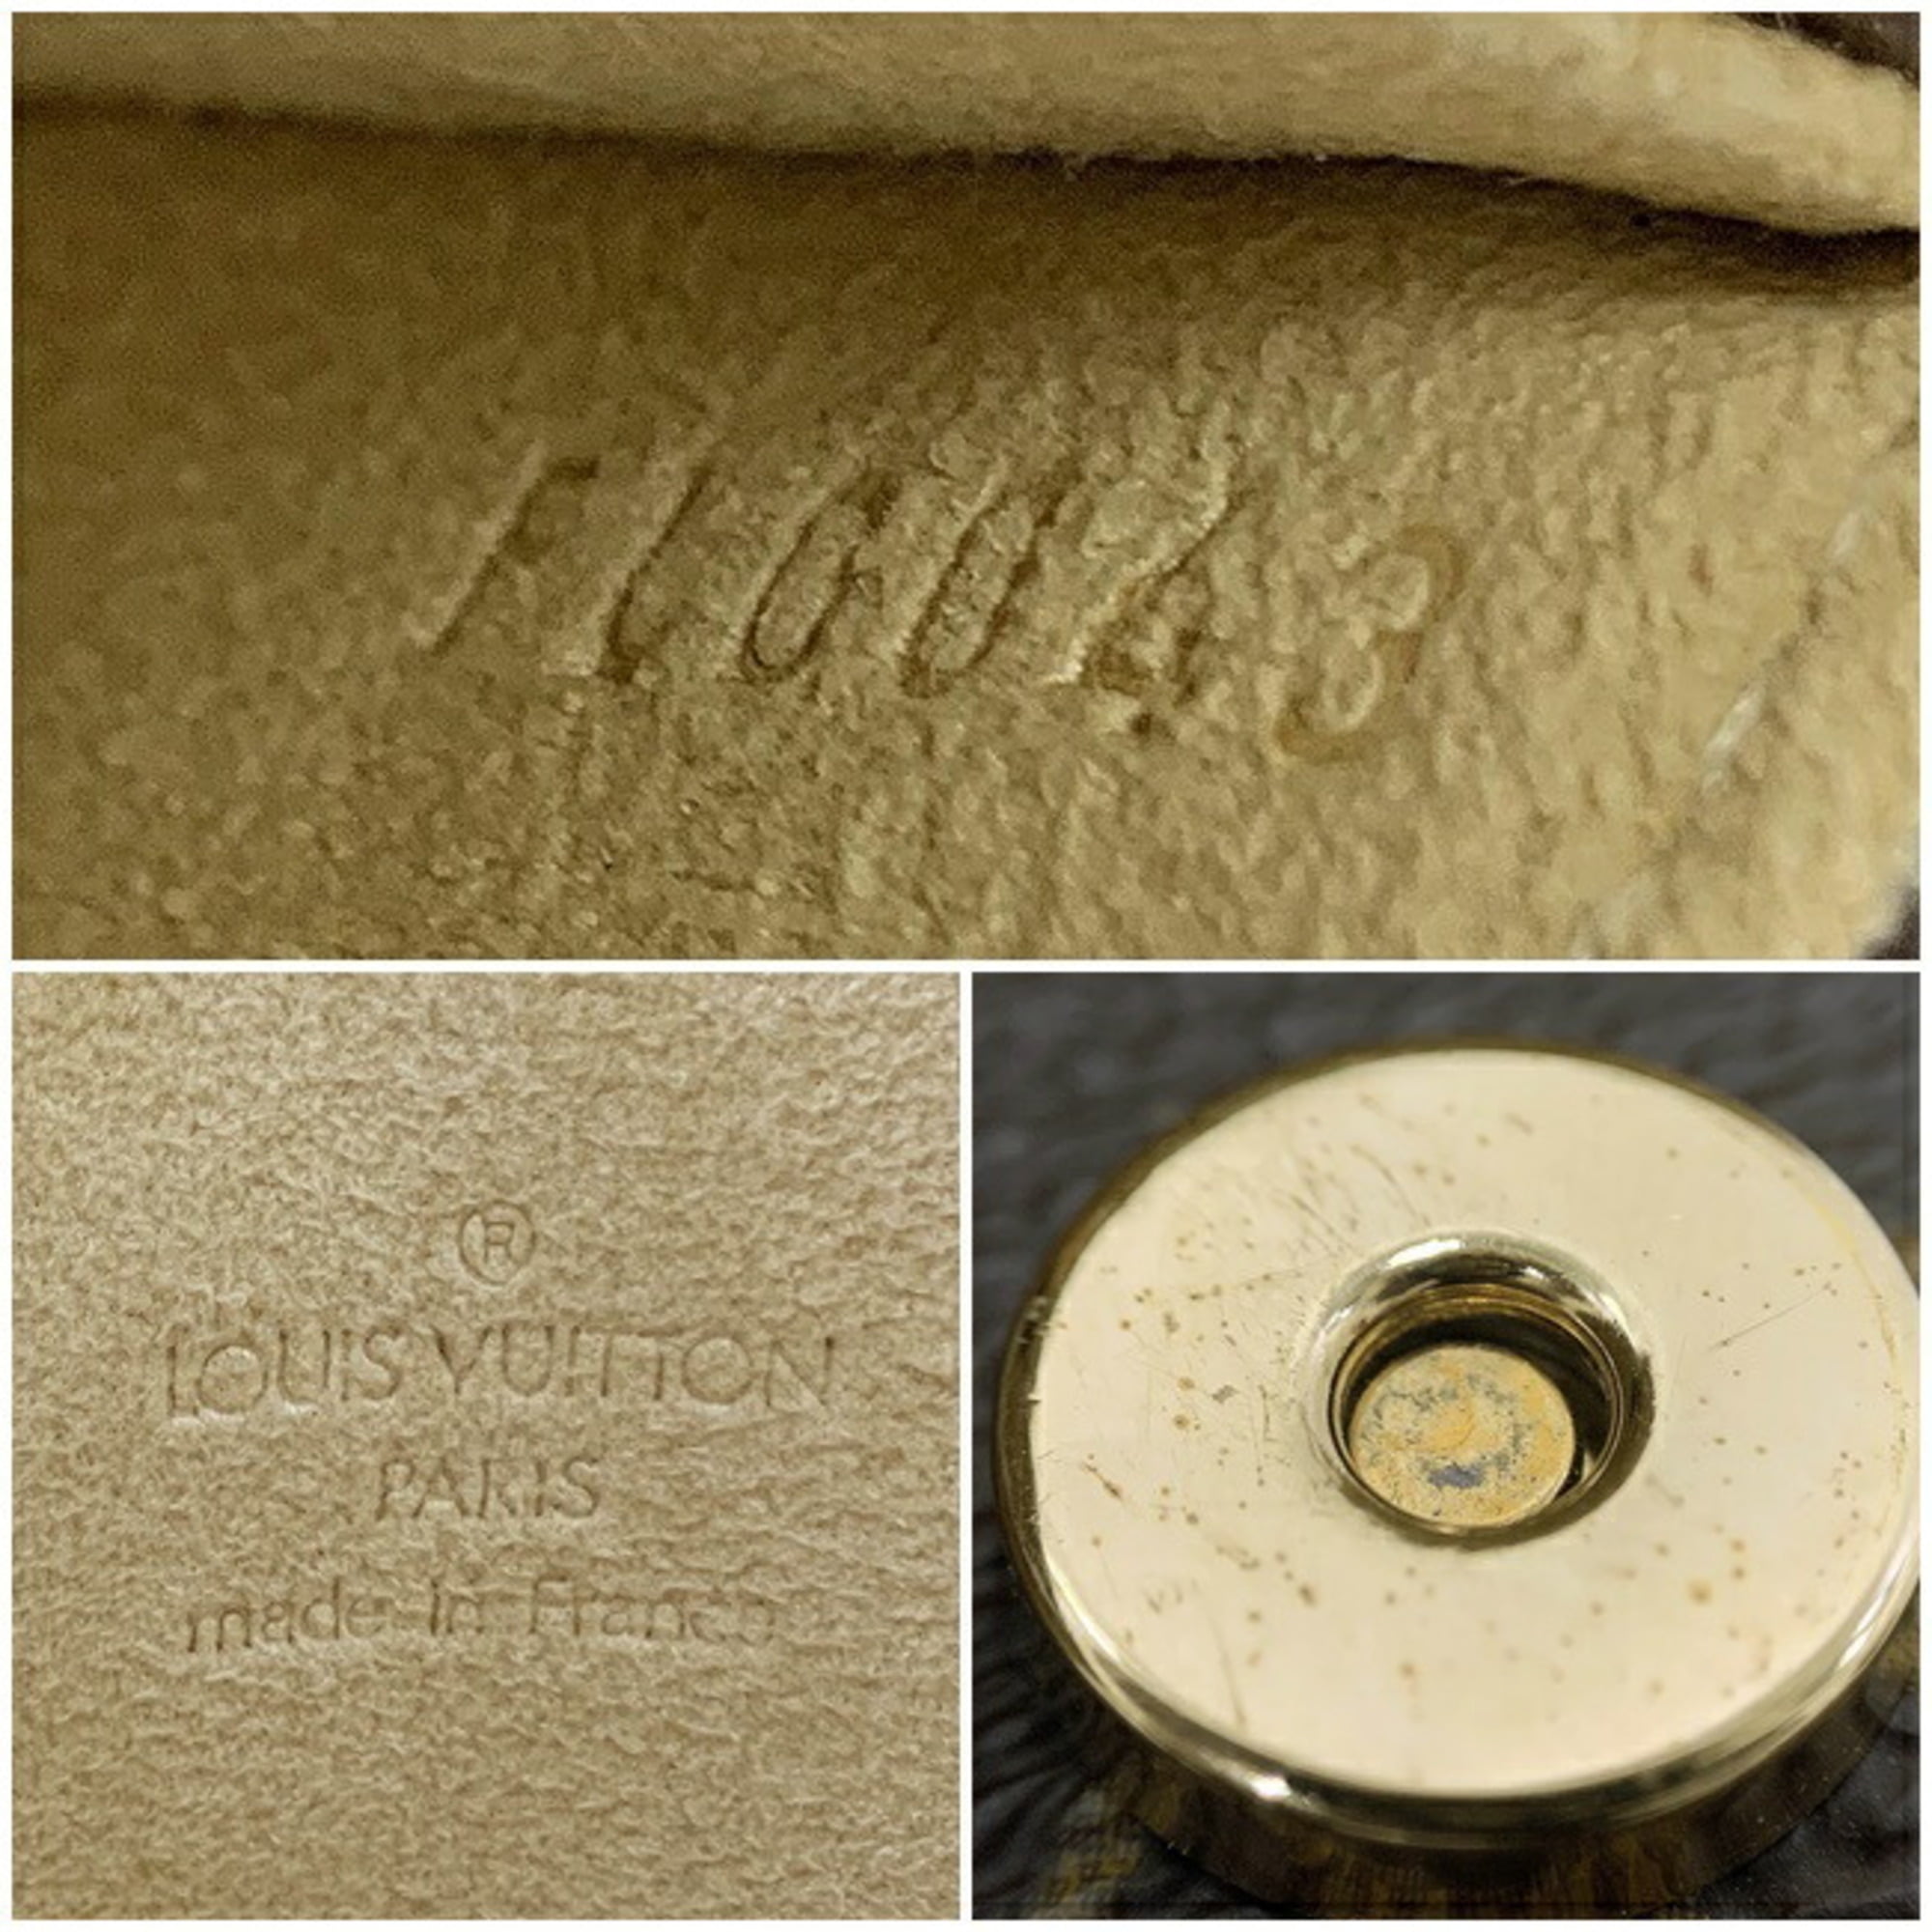 Louis Vuitton Belt Bag – SFN